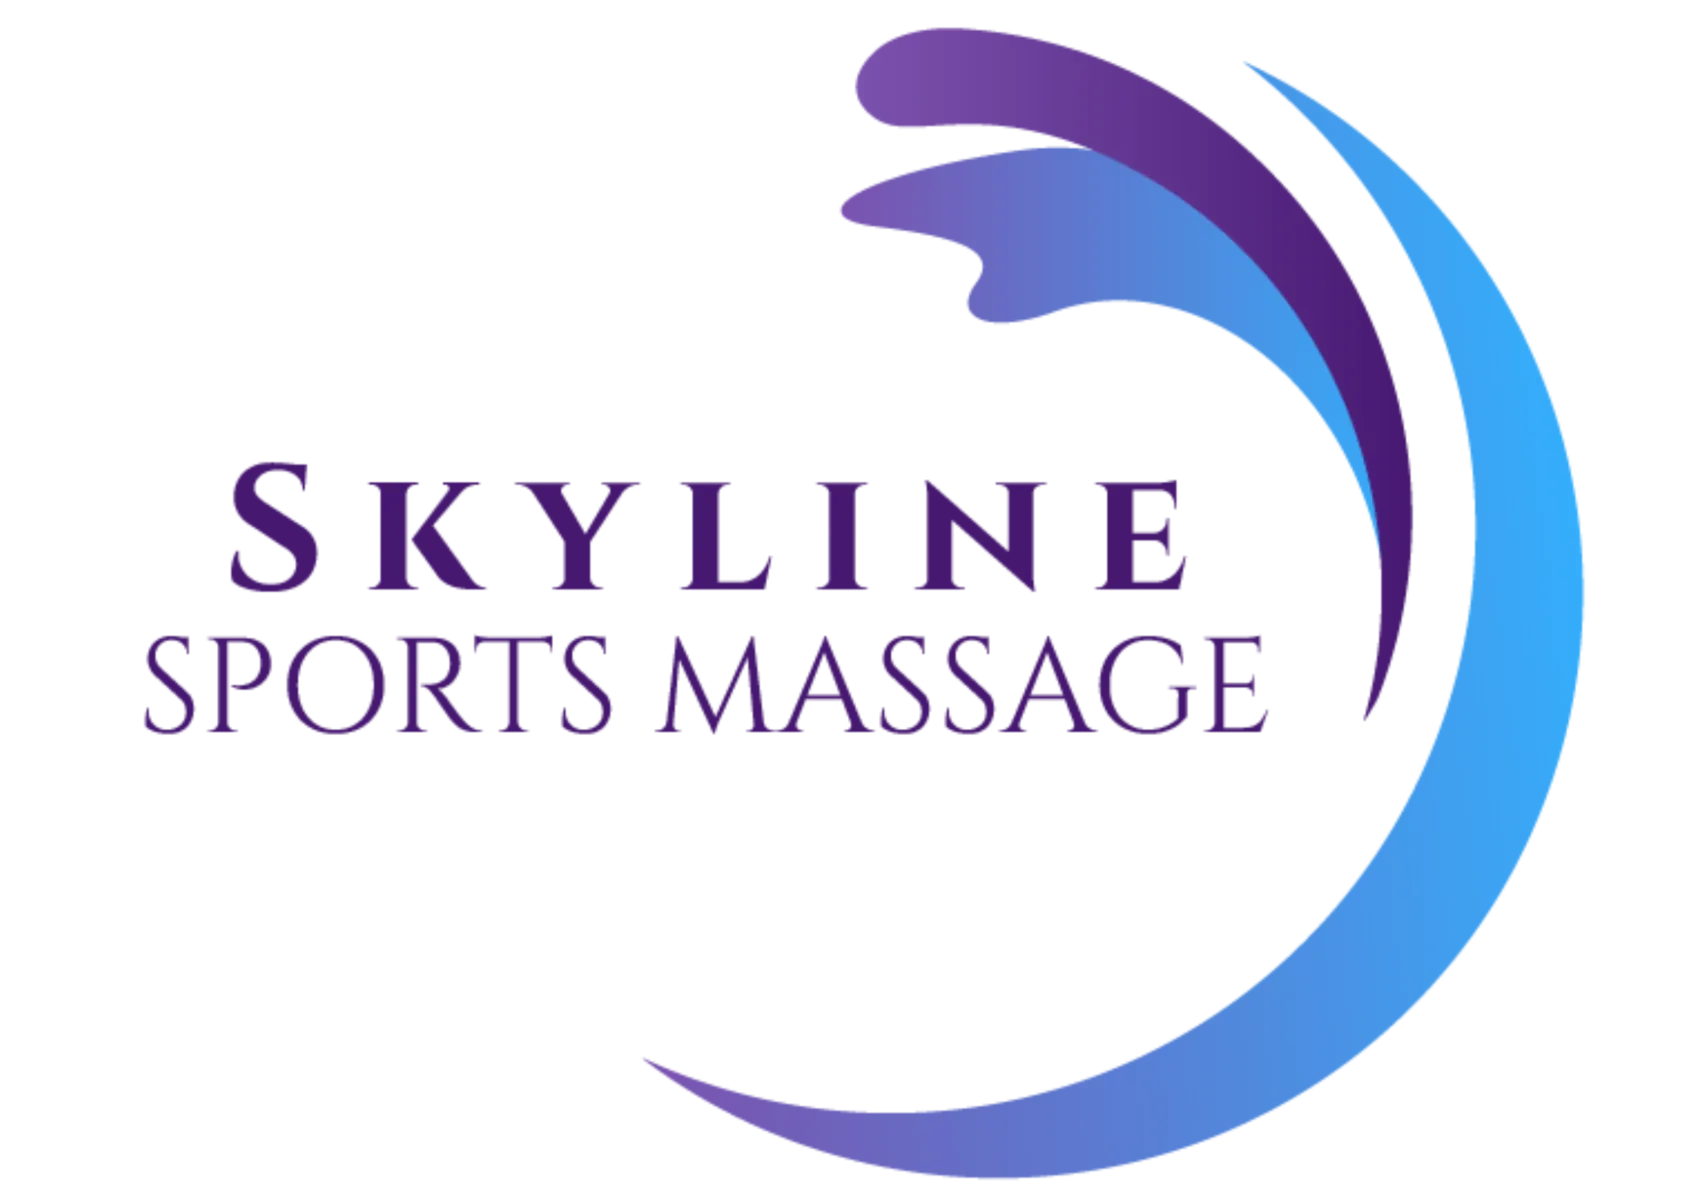 Skyline Sports Massage